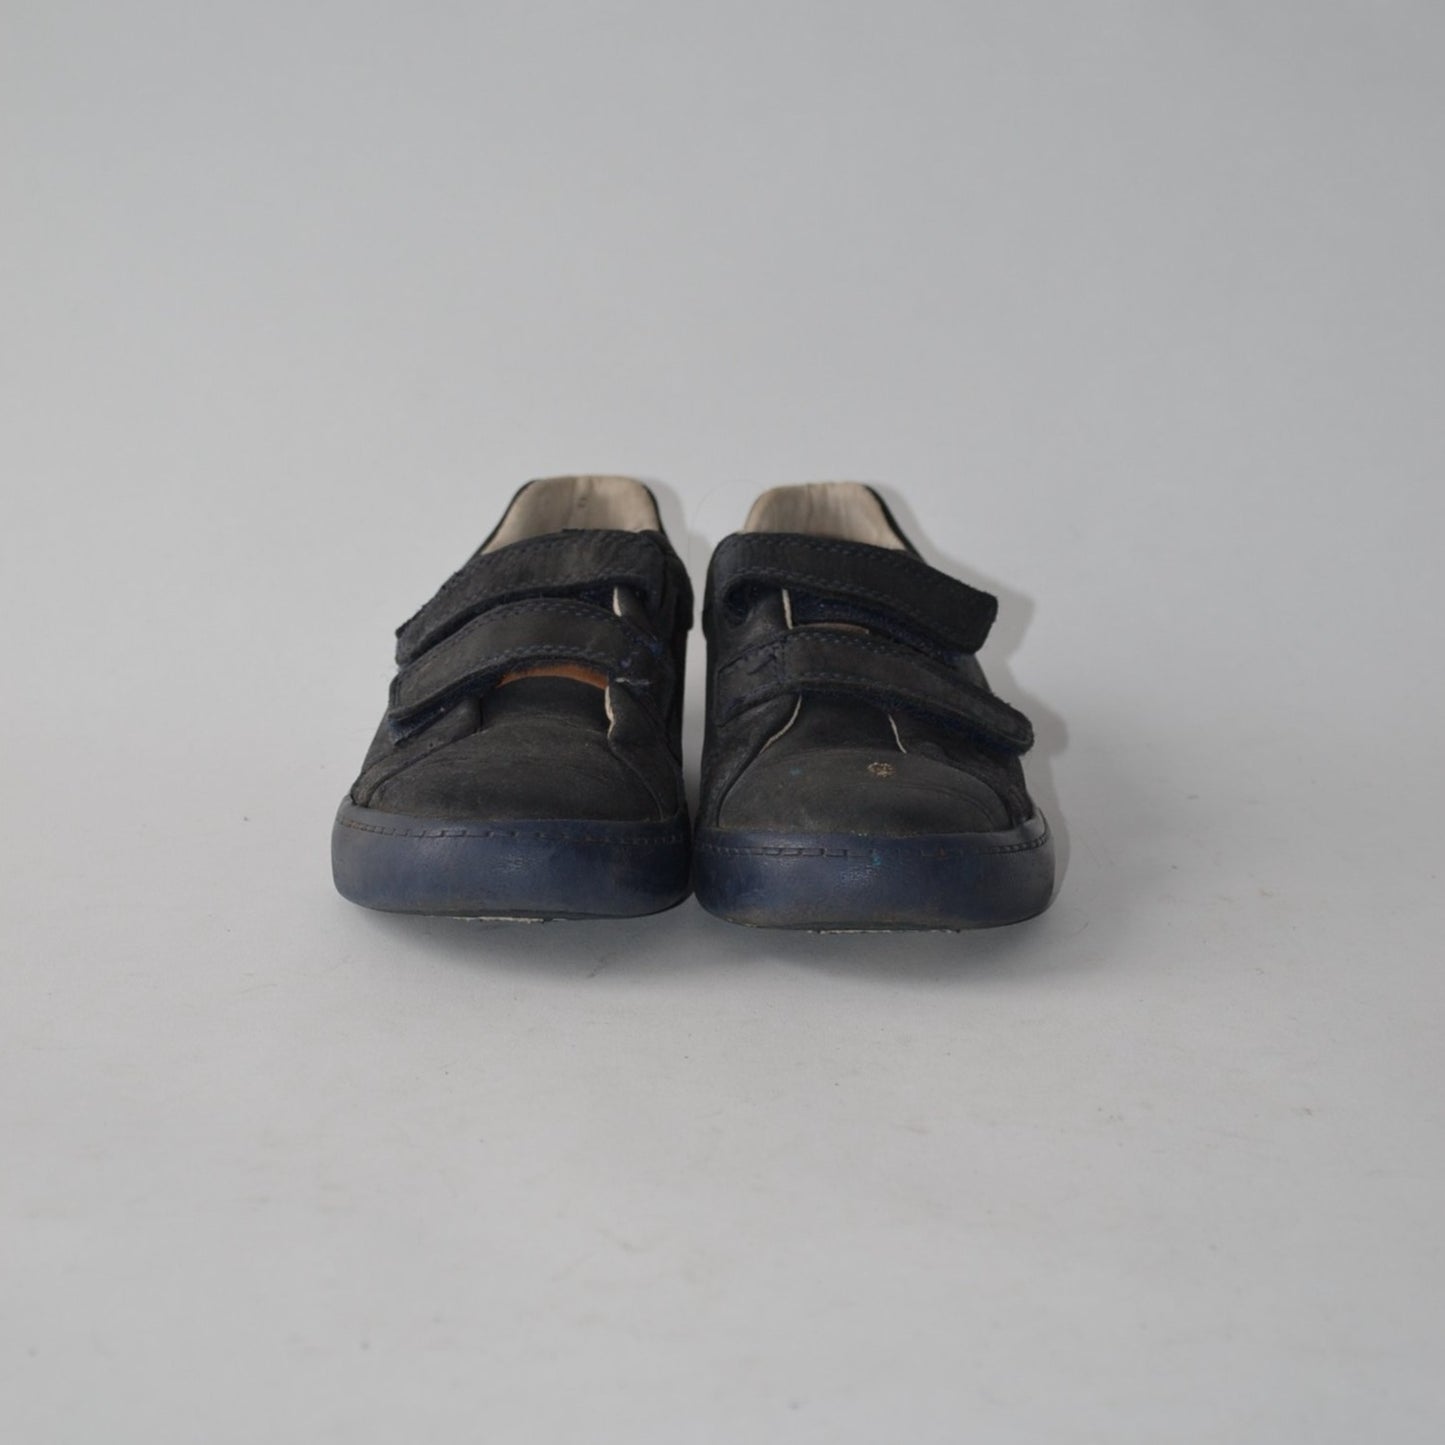 Shoes - Clarks Velcro - Shoe Size 10.5 (jr)